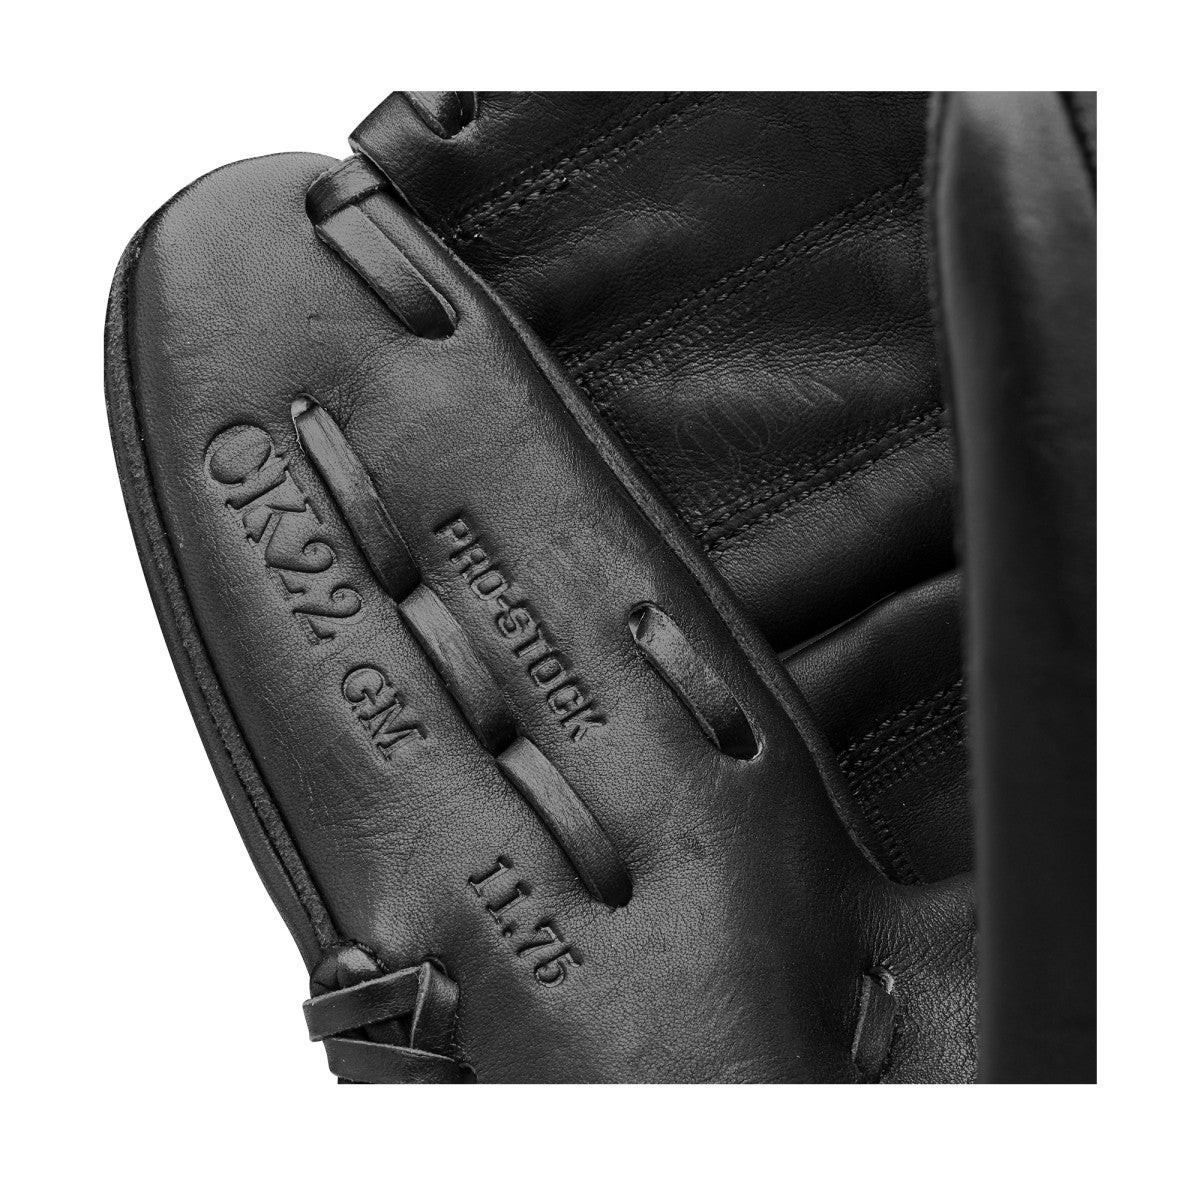 2021 A2000 CK22 GM 11.75" Pitcher's Baseball Glove ● Wilson Promotions - -7